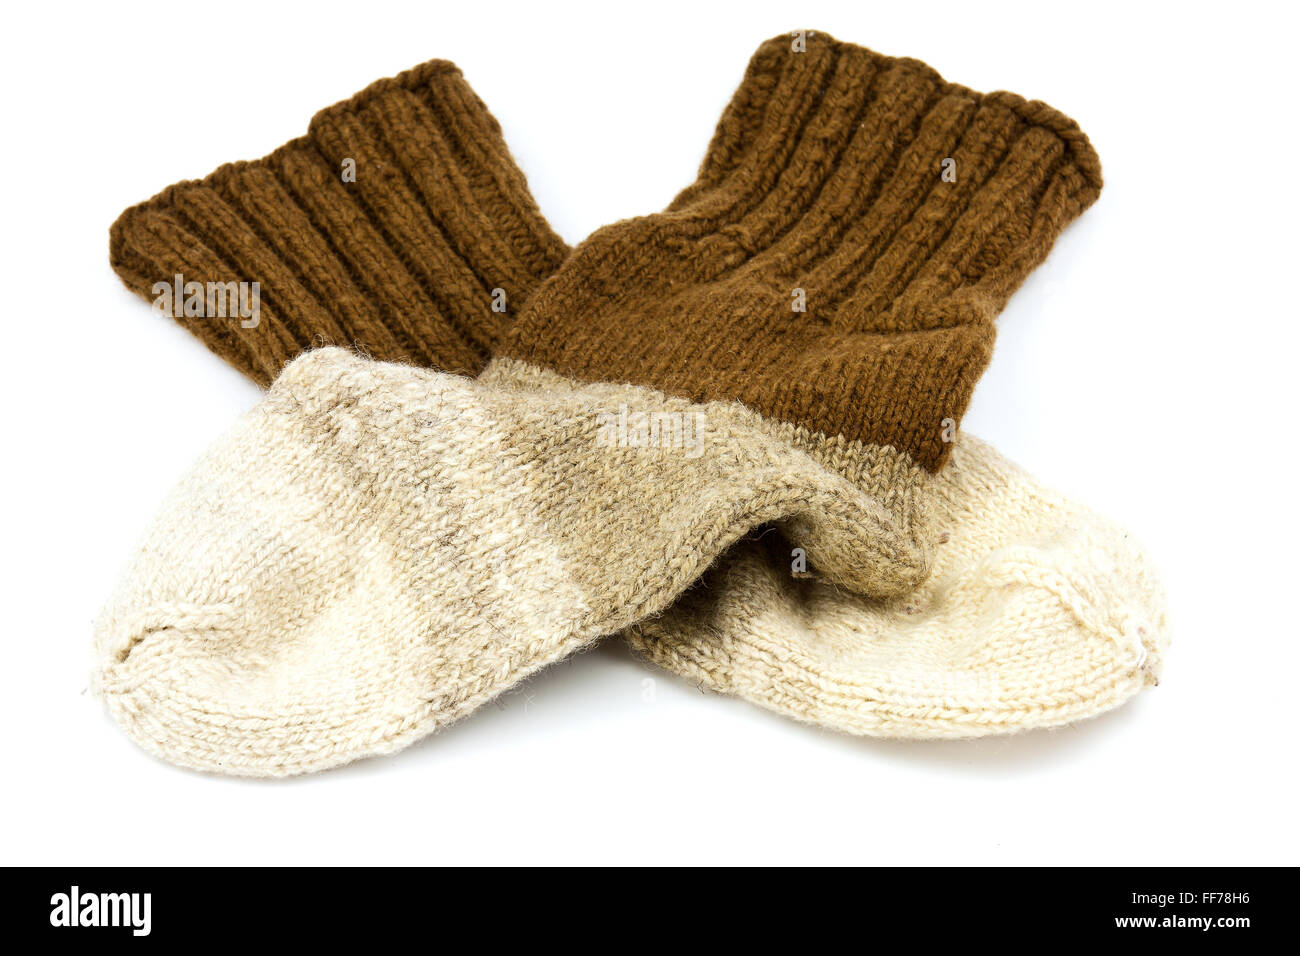 Tradicional tejida a mano calcetines de lana en tres colores Foto de stock